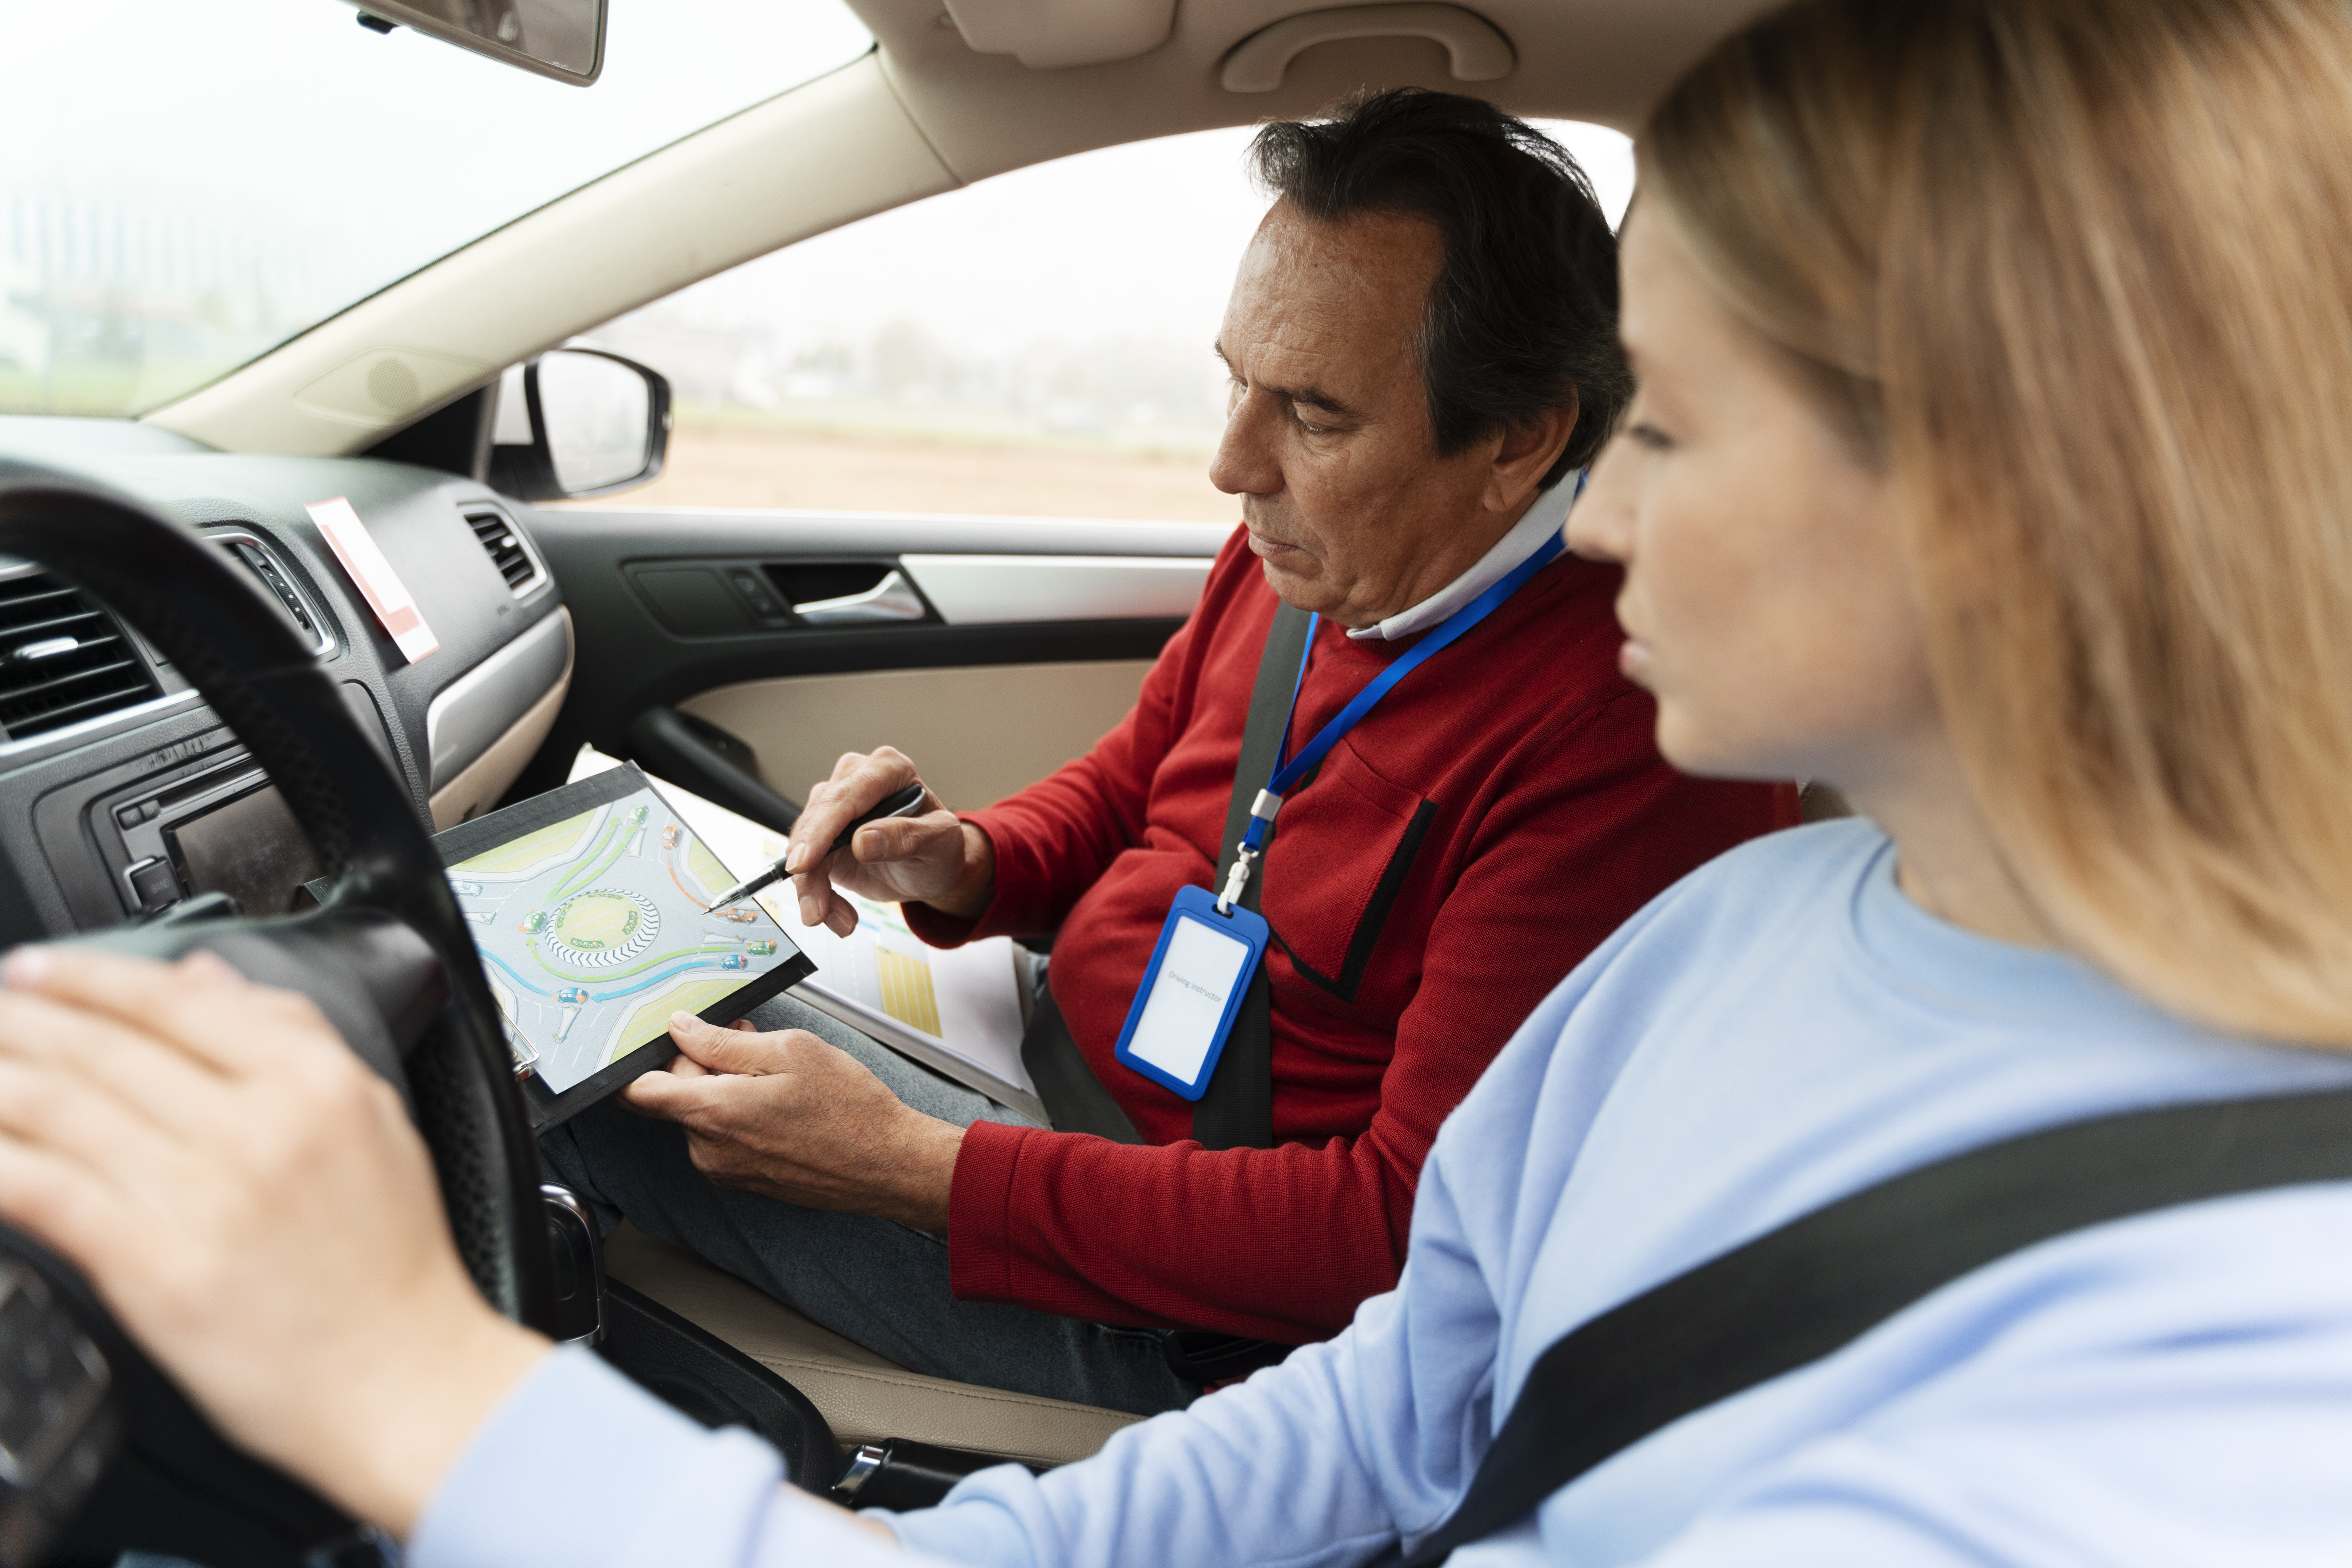 Imagem mostra um instrutor de autoescola e uma aluna, ambos dentro de um veículo. O instrutor está apontando para um mapa e explicando algo, enquanto a aluna observa.